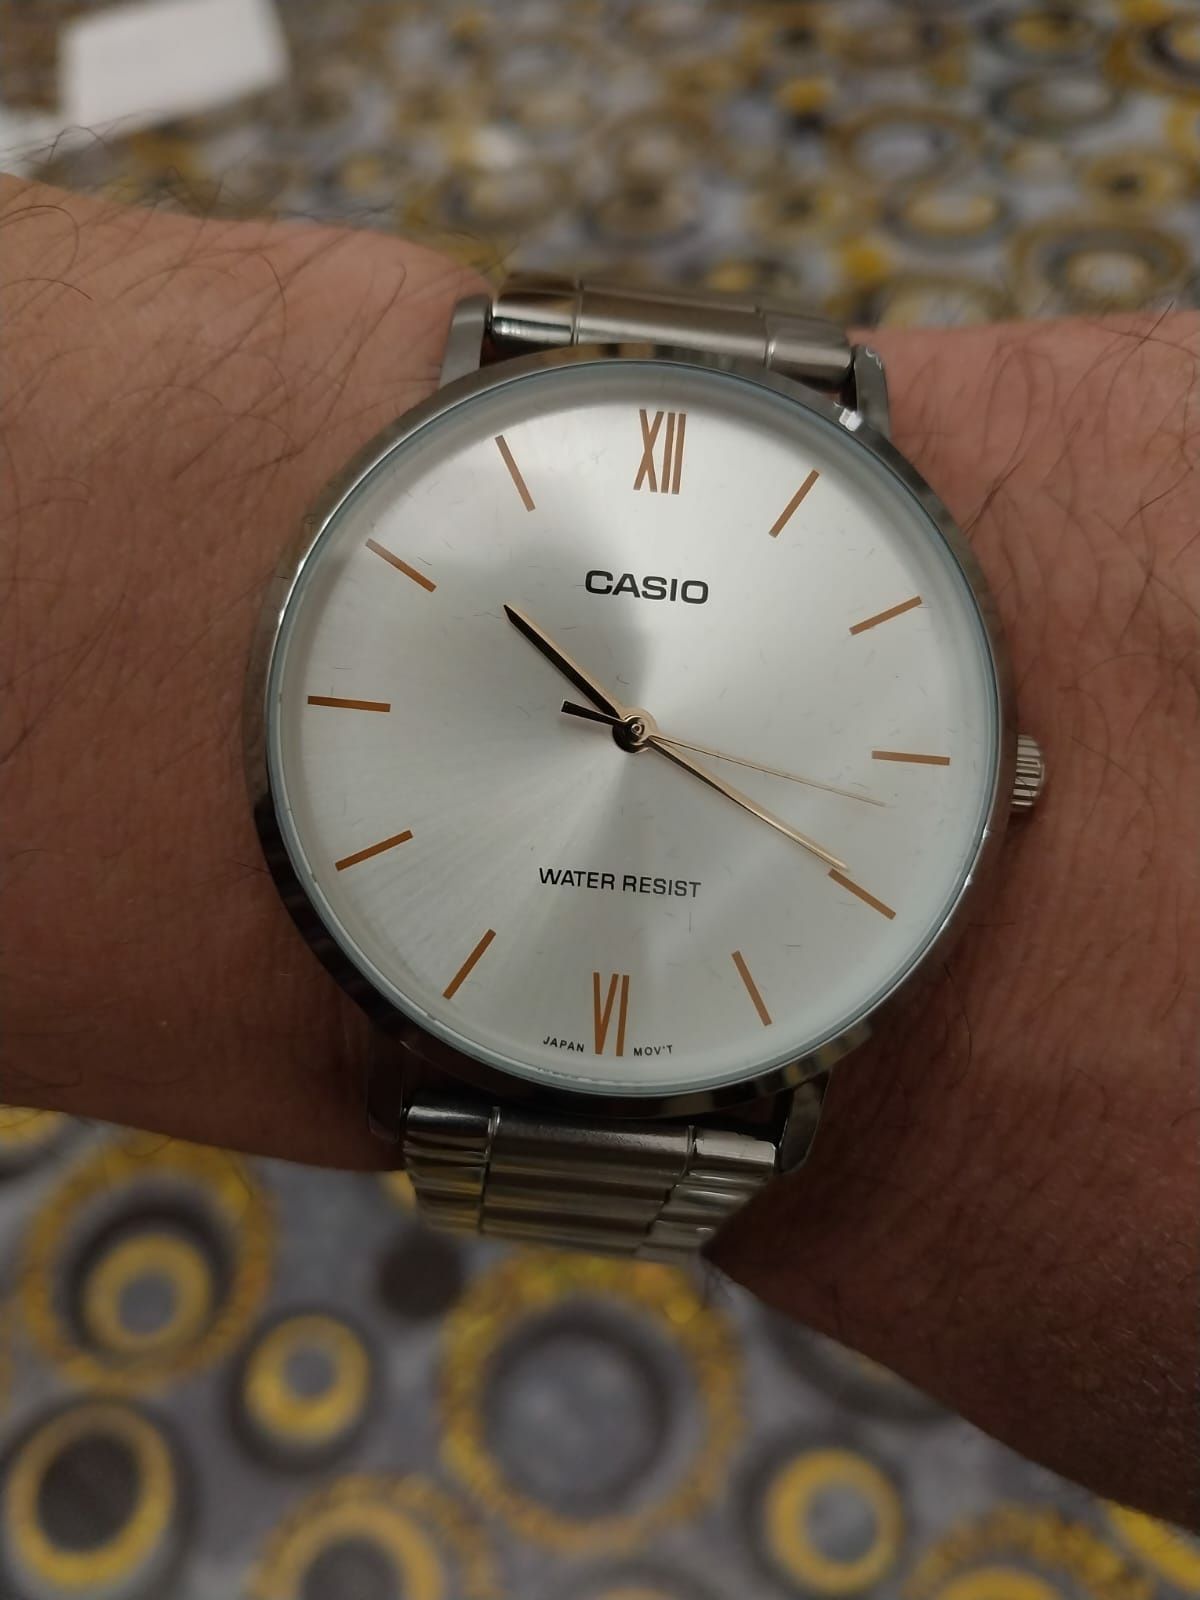 Оригинальные часы Casio новые в упаковке